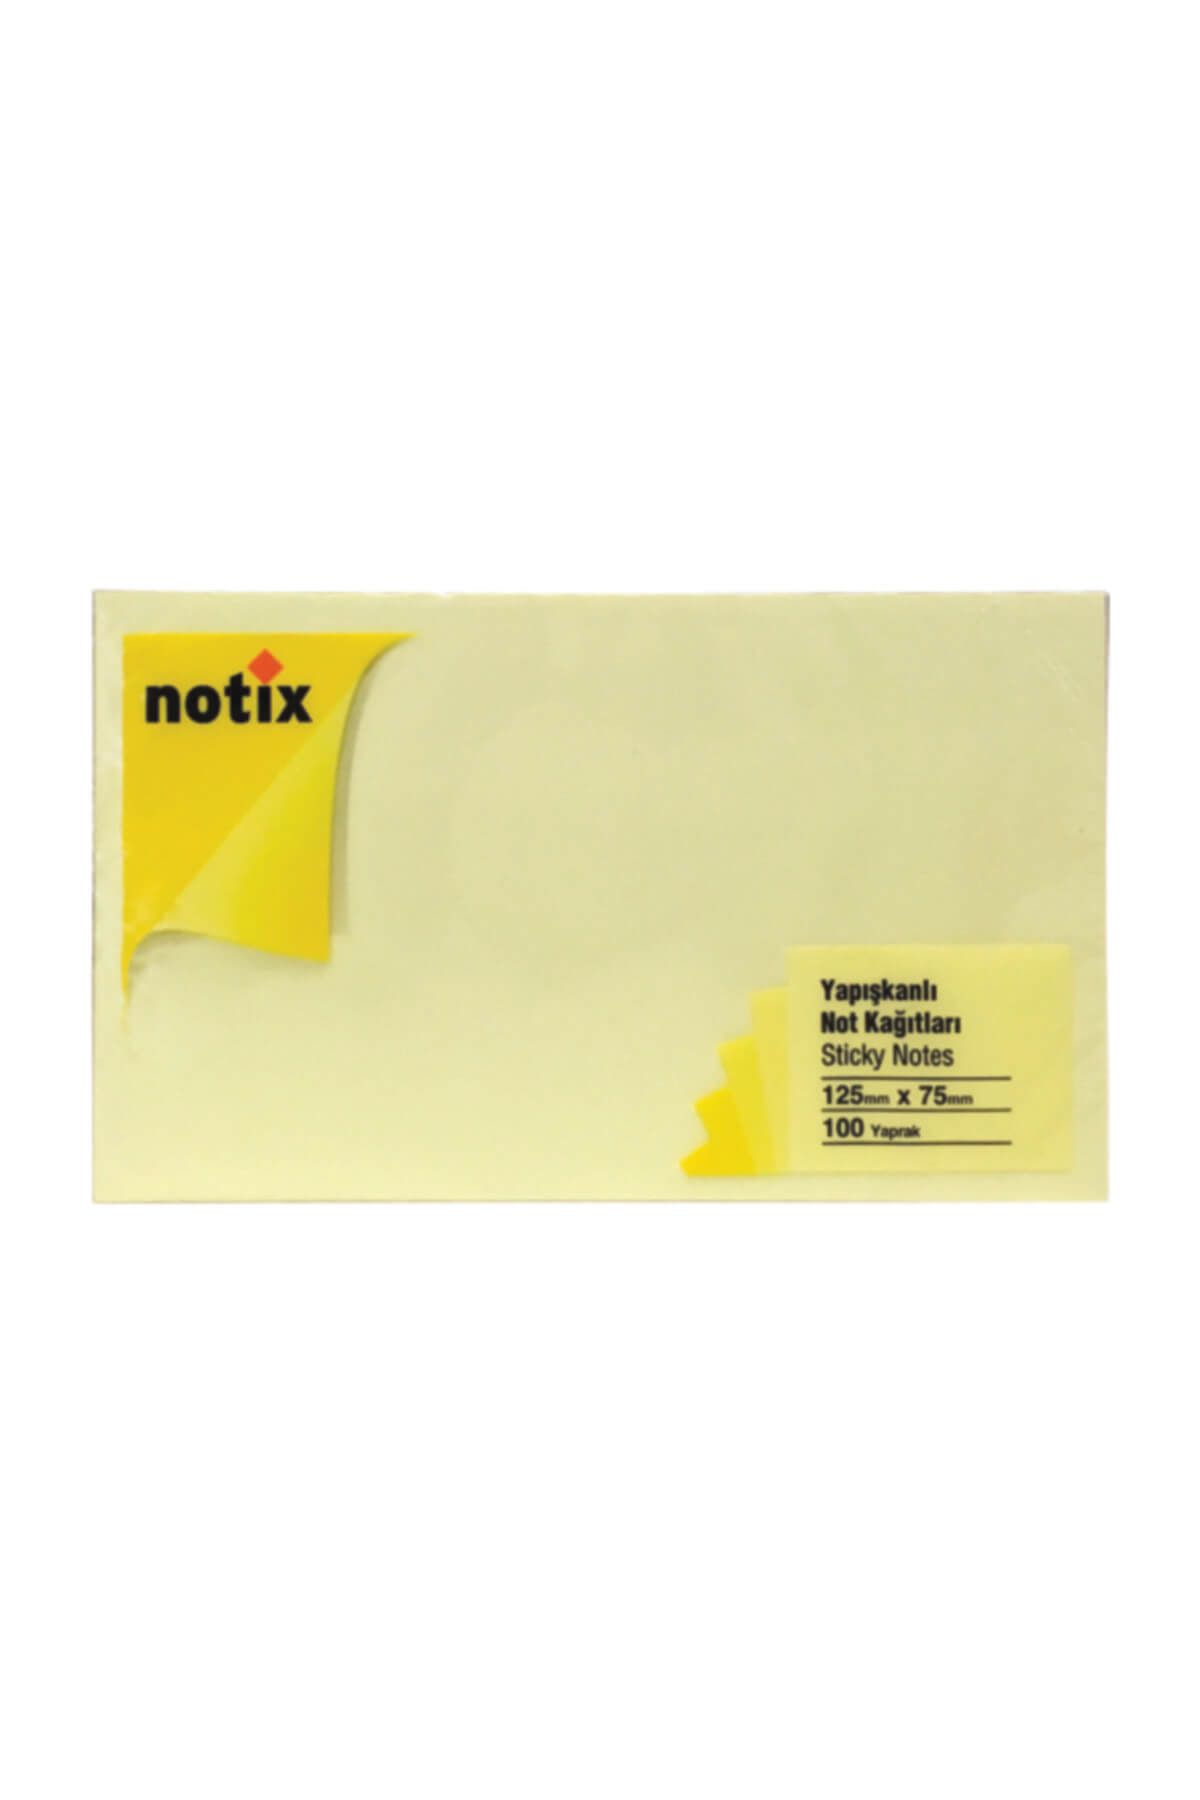 Umix Notix Yapışkanlı Notluk Sarı 100 Yp 125x75mm